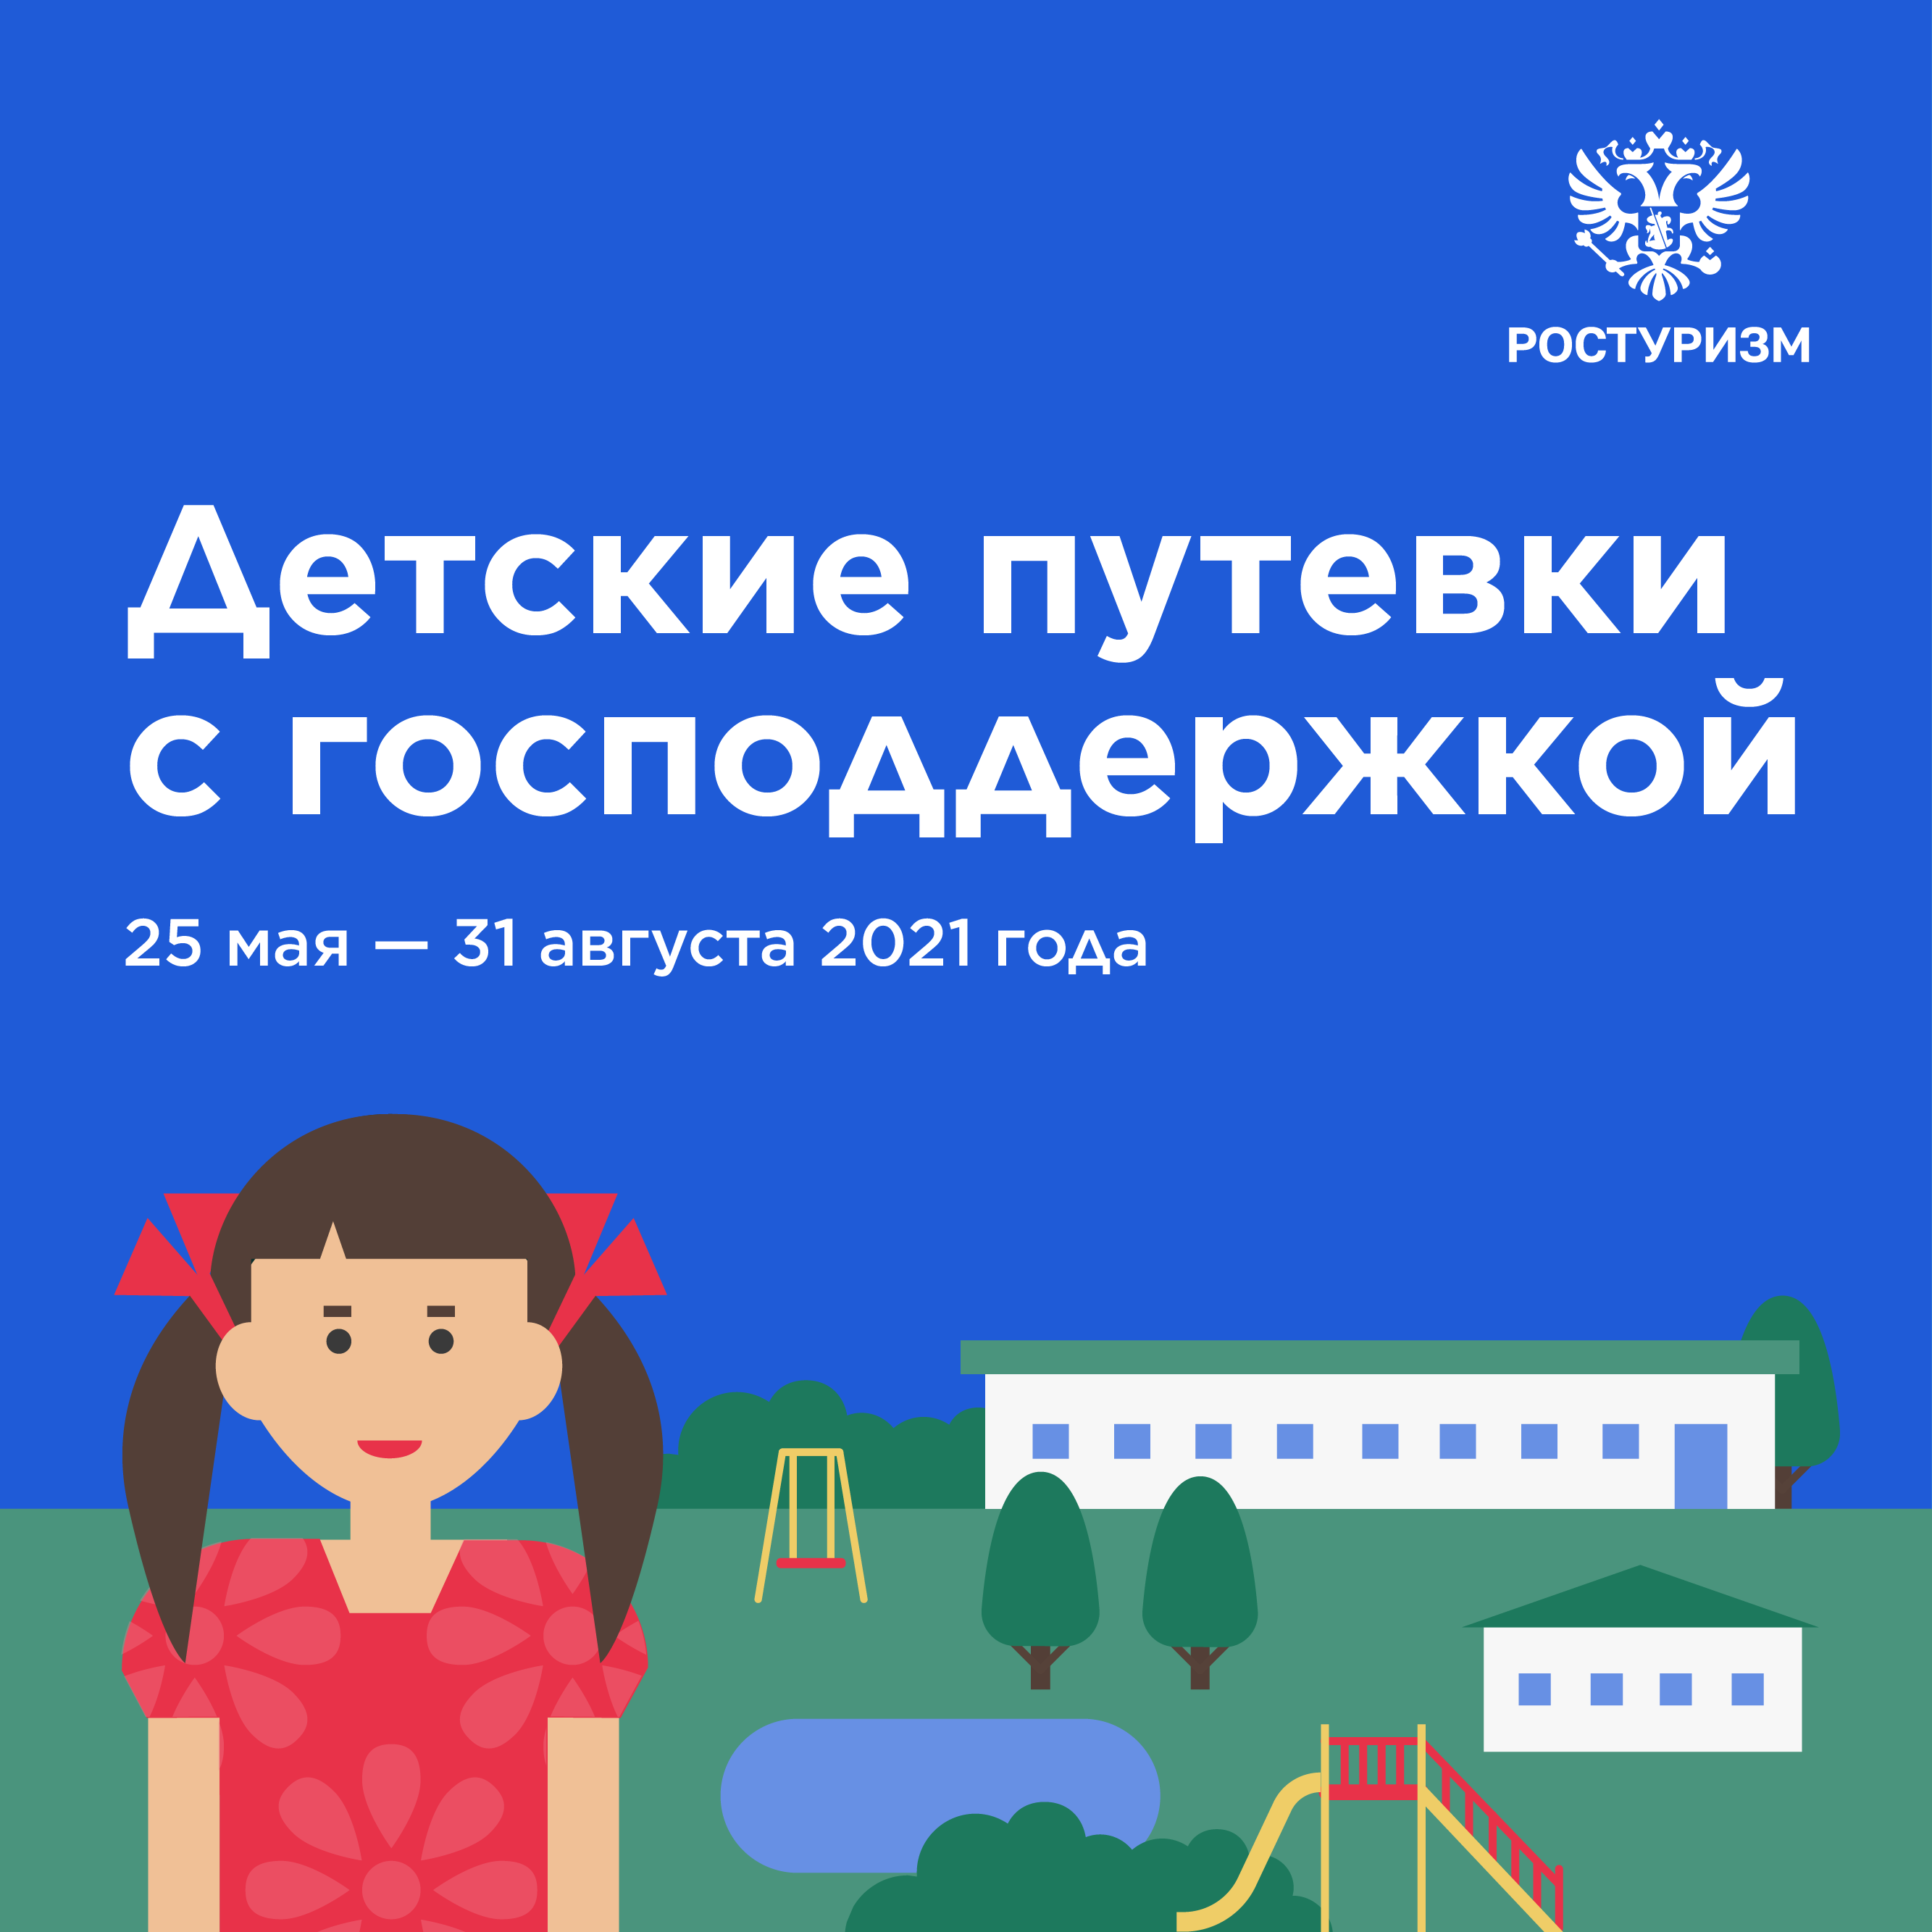 Старт программы детского туристического кешбэка с 25 мая 2021 года